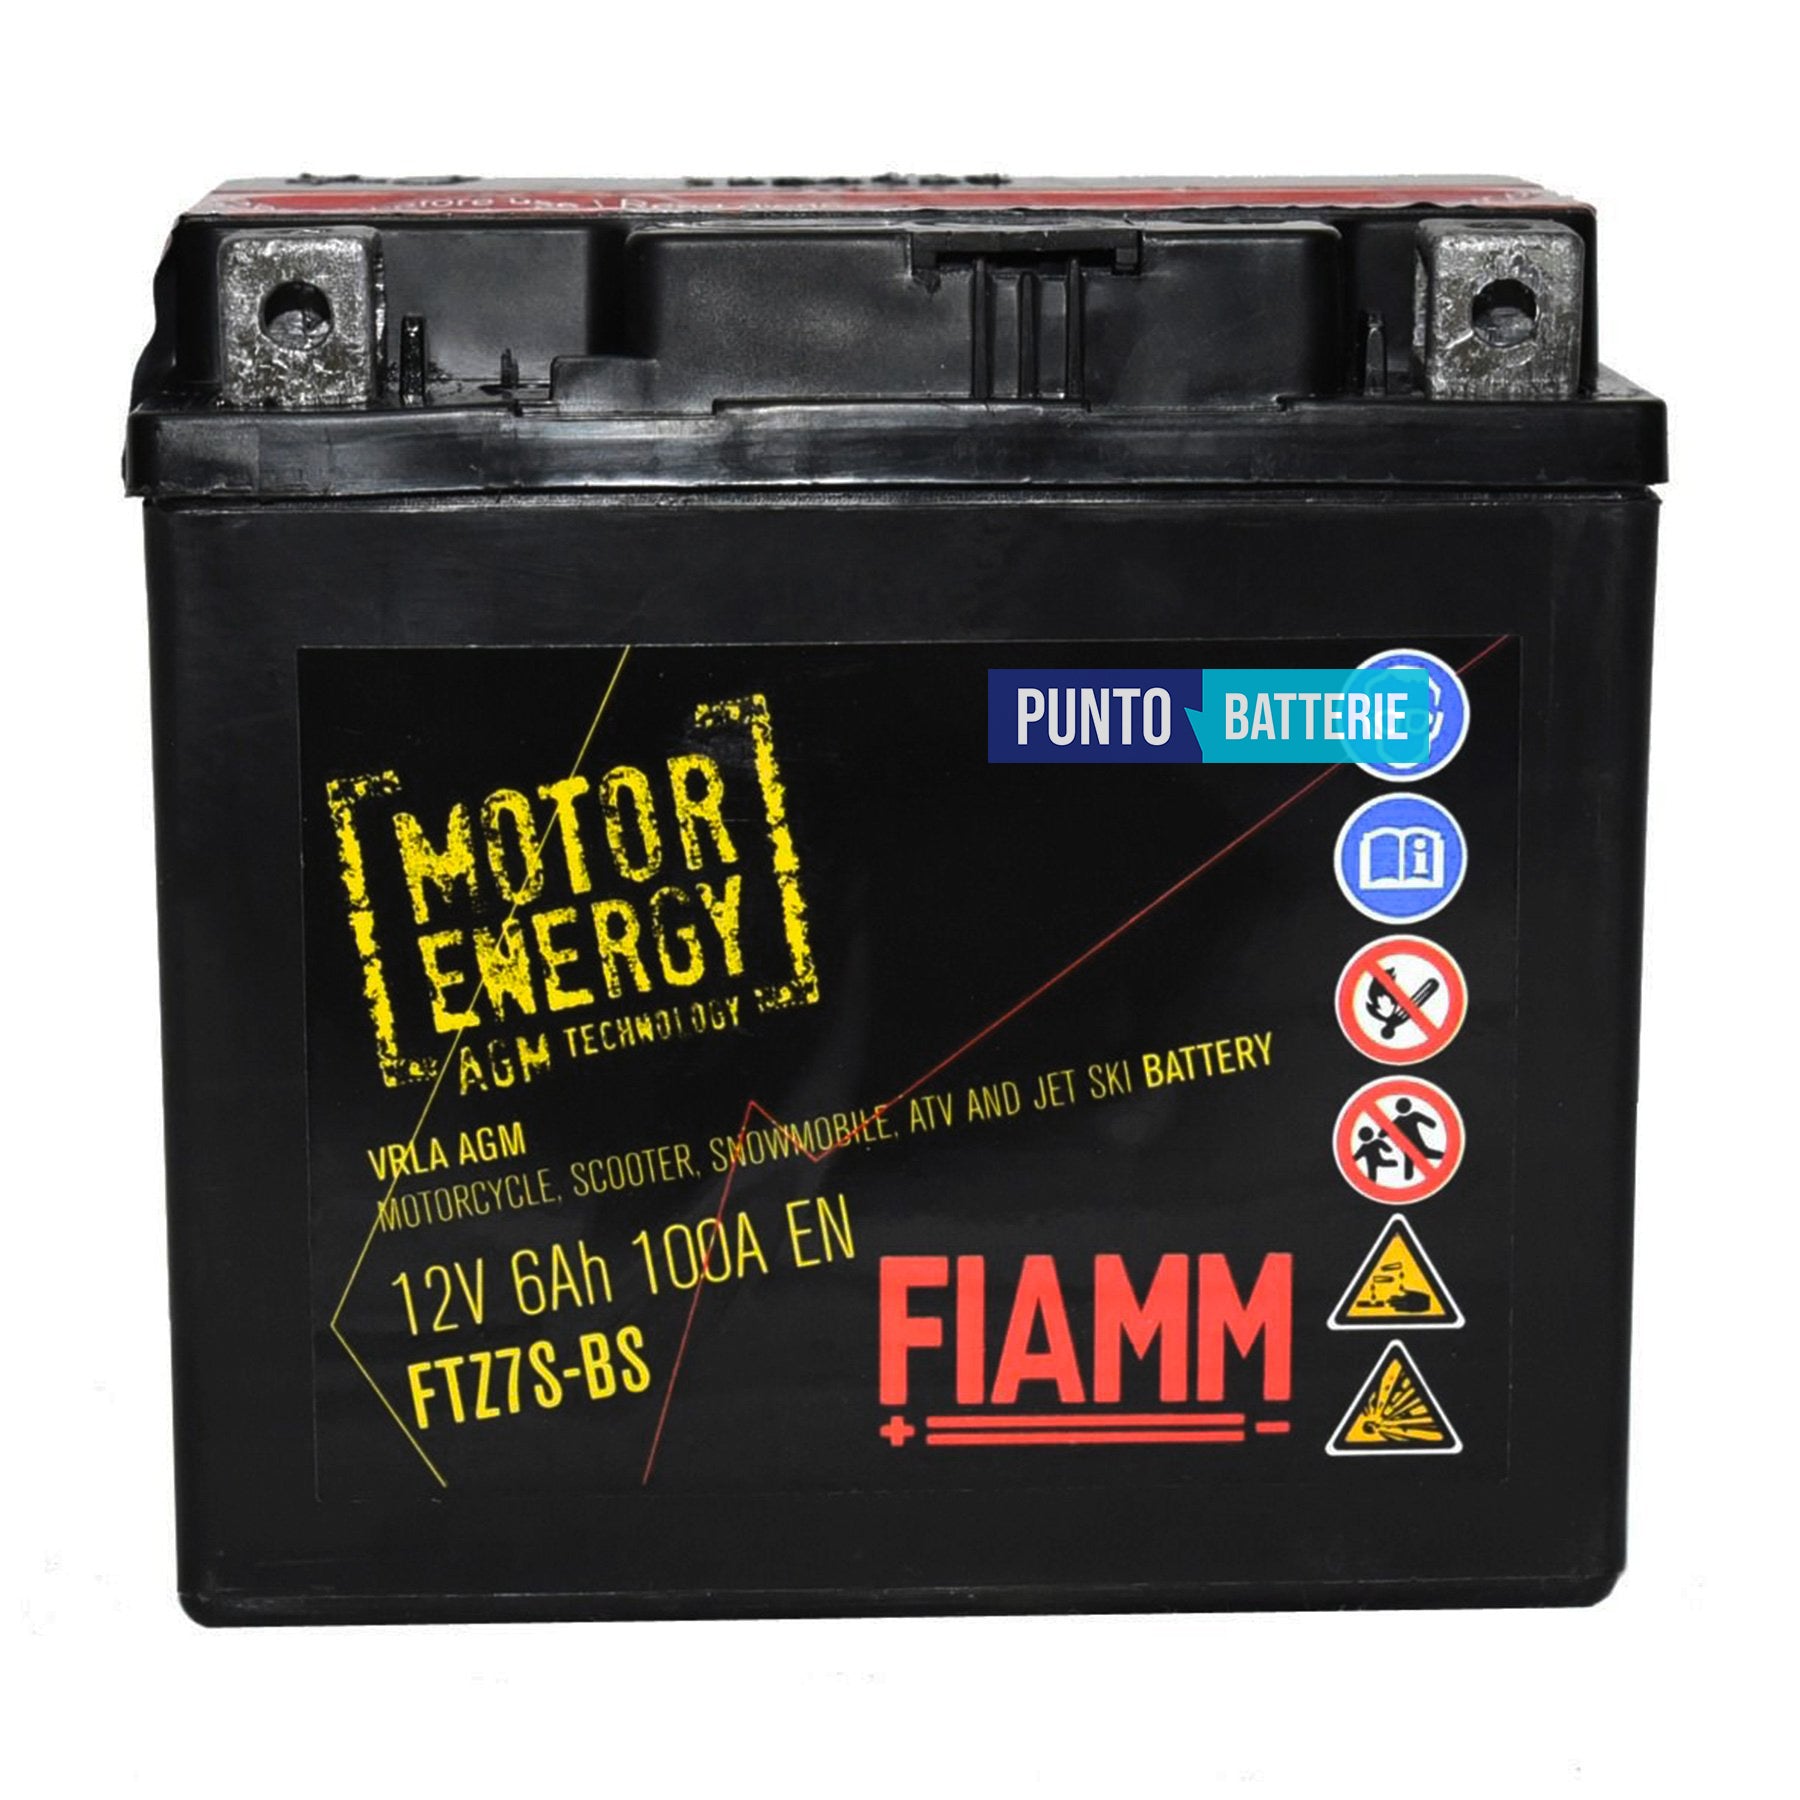 Batteria Fiamm 6Ah, 12V, 100A , 113x70x105mm